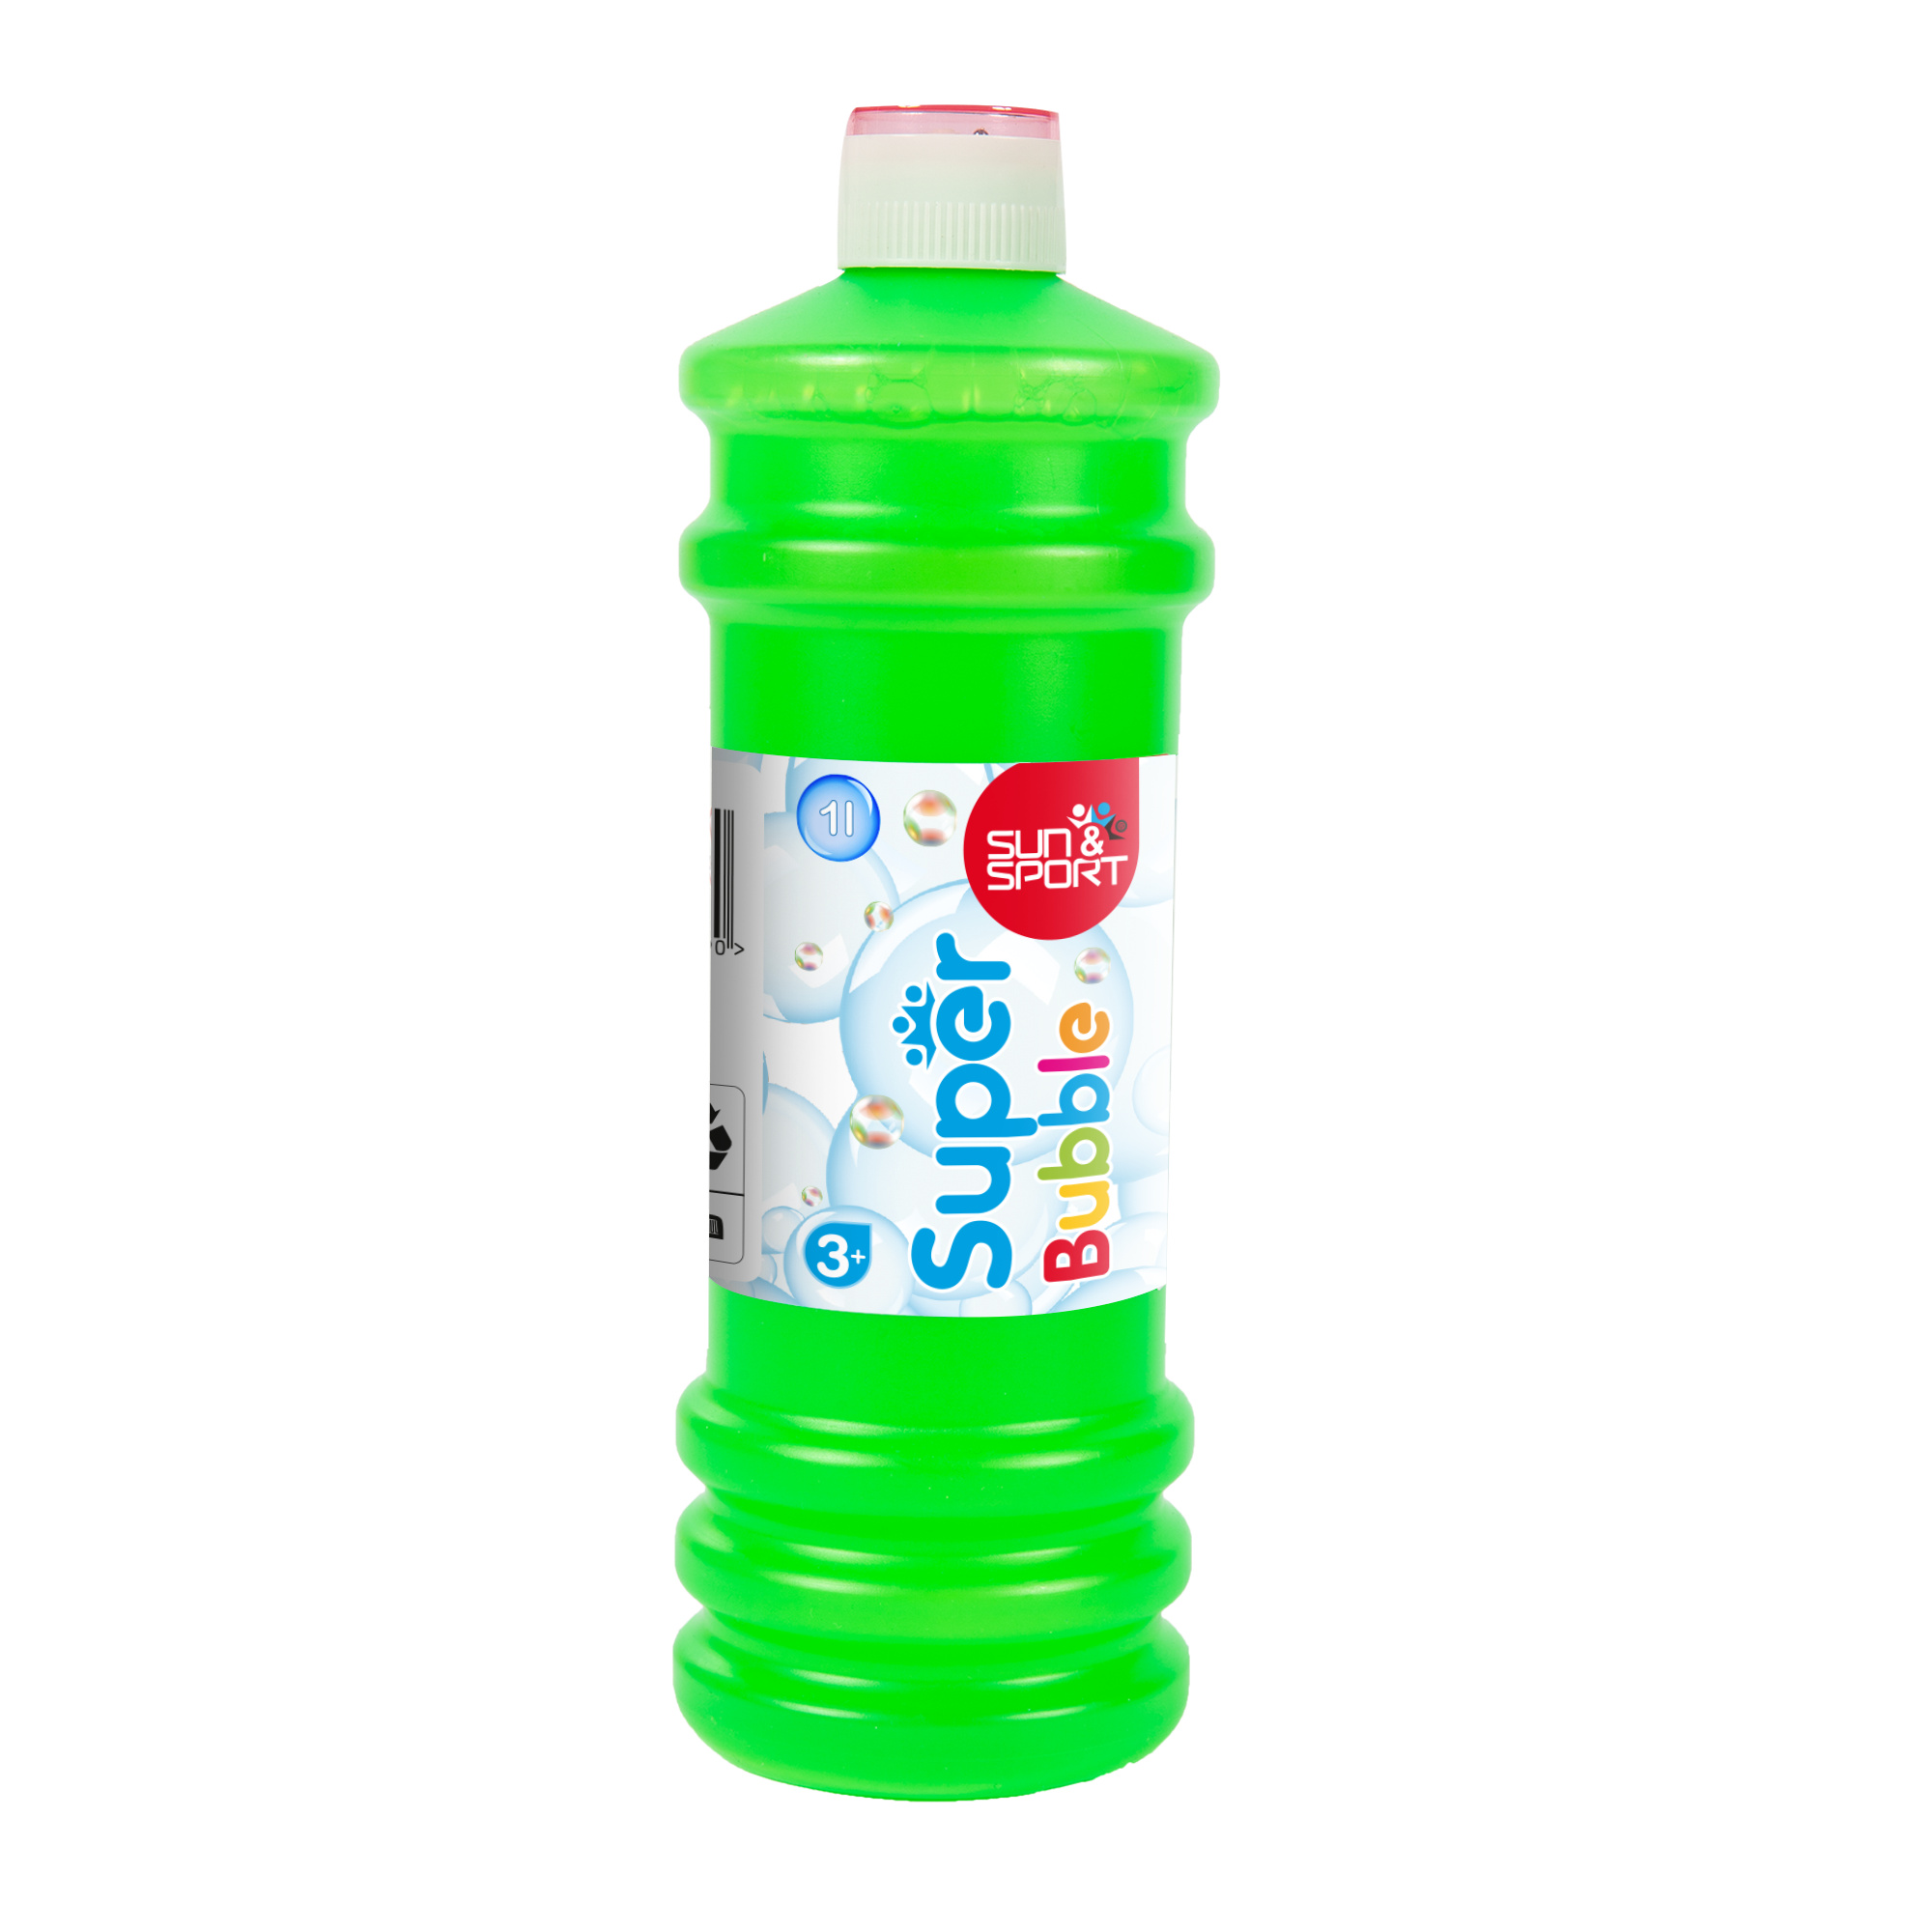 Liquido bolle di sapone 1l - sun & sport - SUN&SPORT